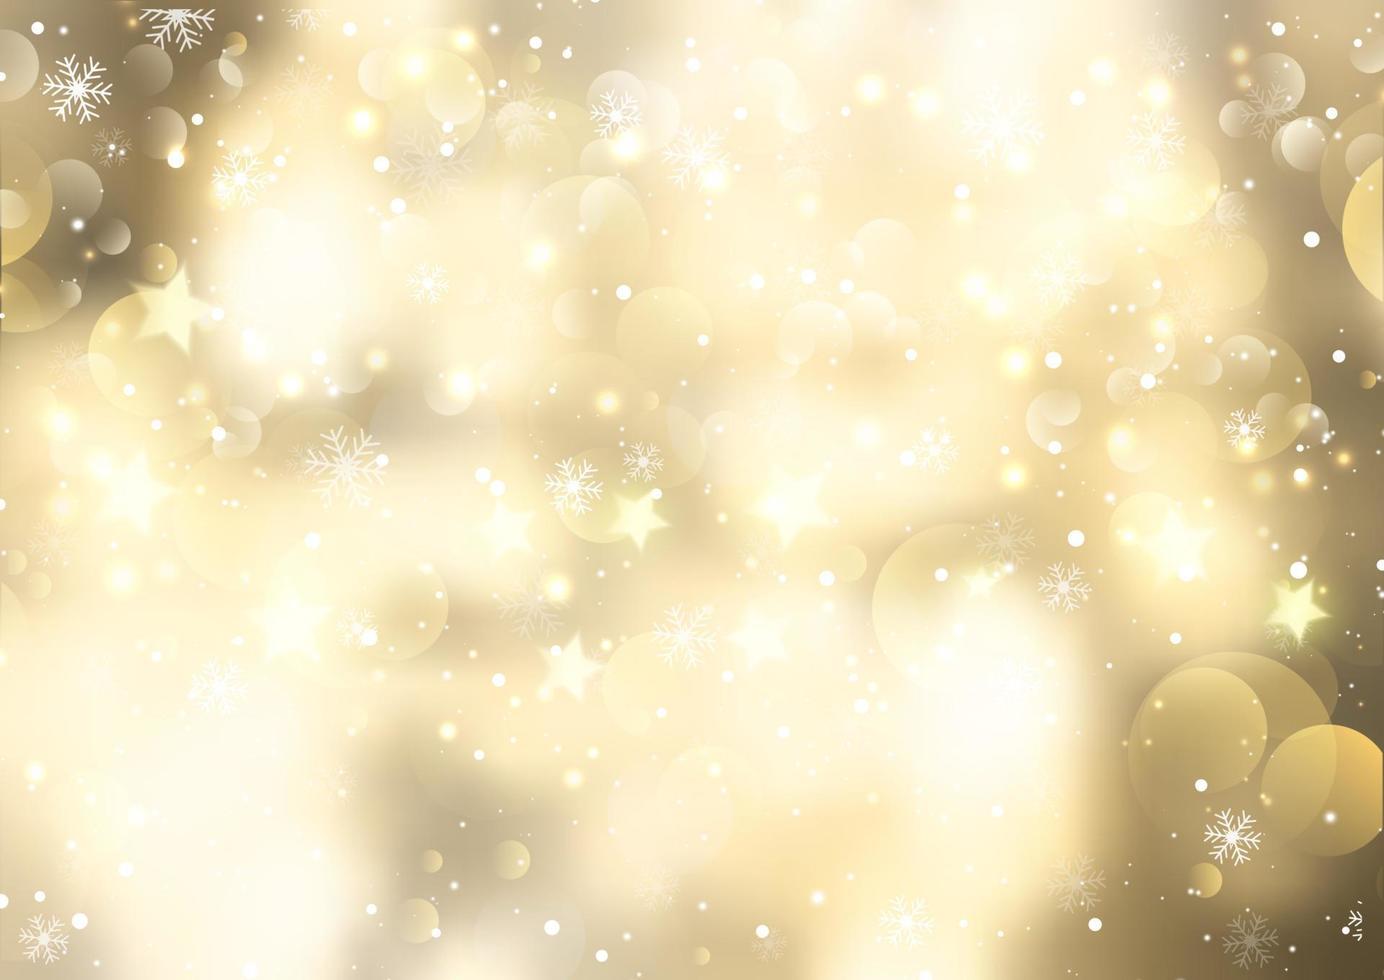 fundo dourado de natal com flocos de neve e luzes bokeh vetor